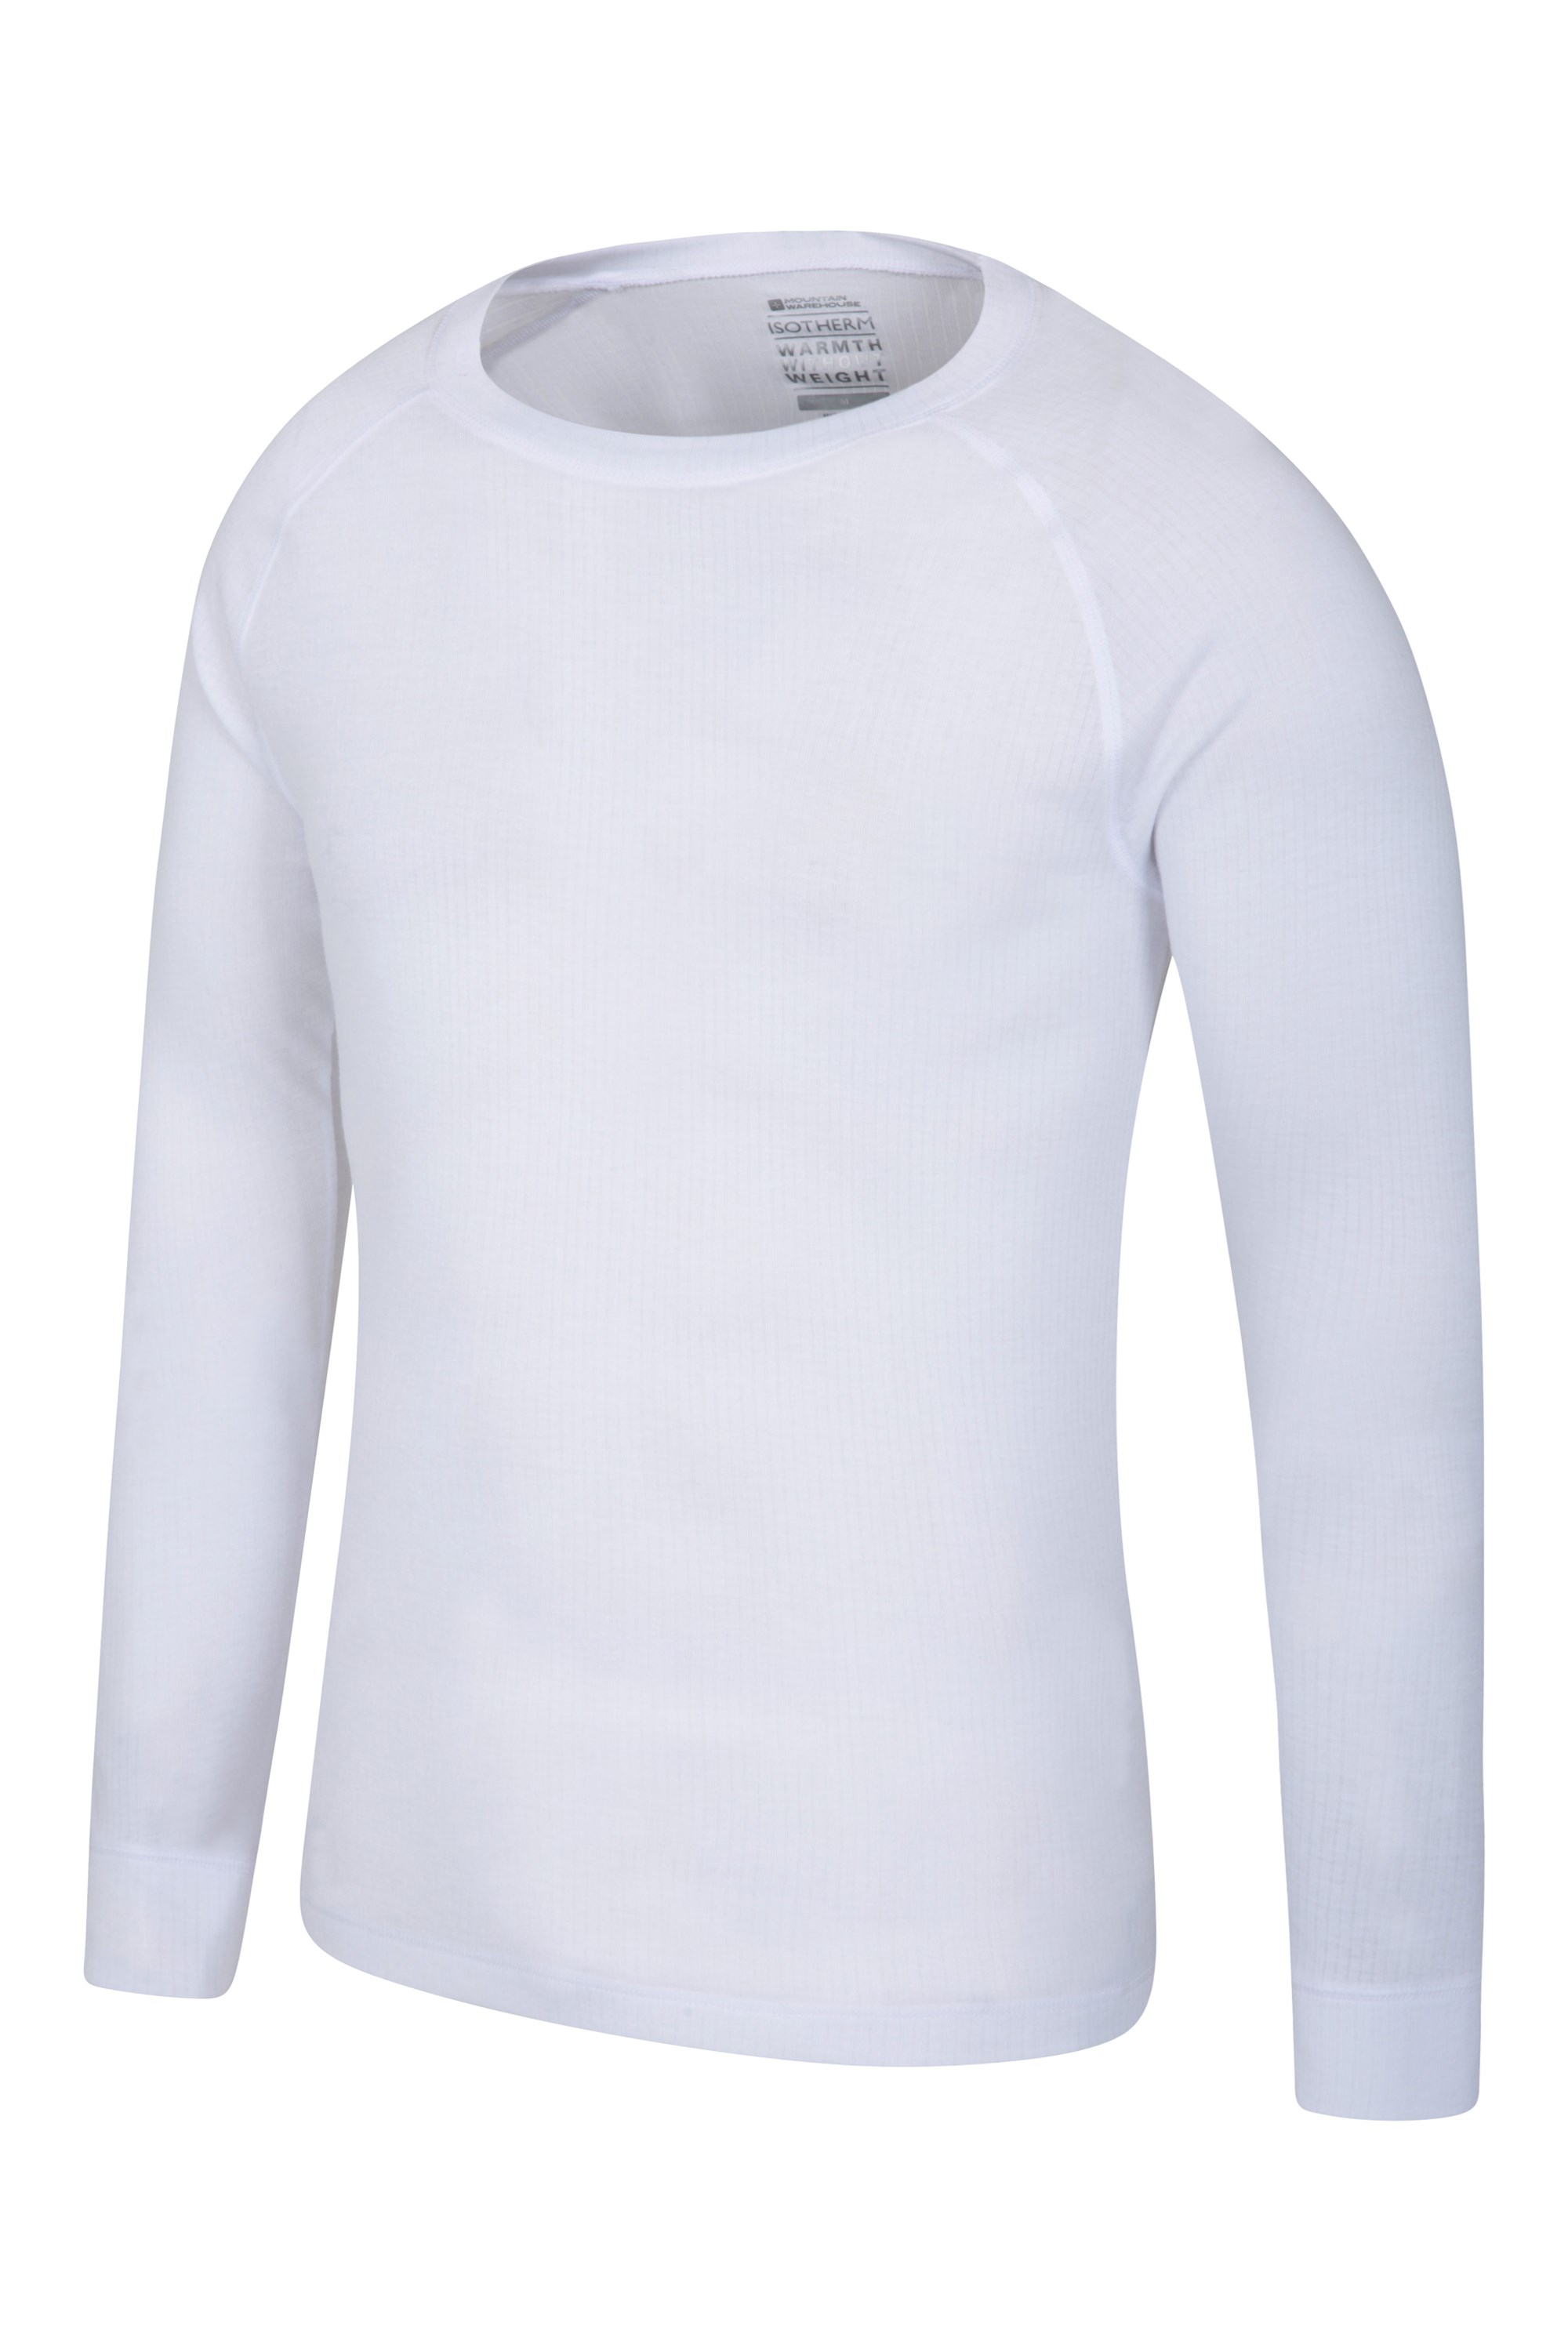 Camiseta con Cuello Vuelto de rápida absorción y Ligera Ropa para niños de Invierno Mountain Warehouse Camiseta Talus con Cuello Vuelto para niños 